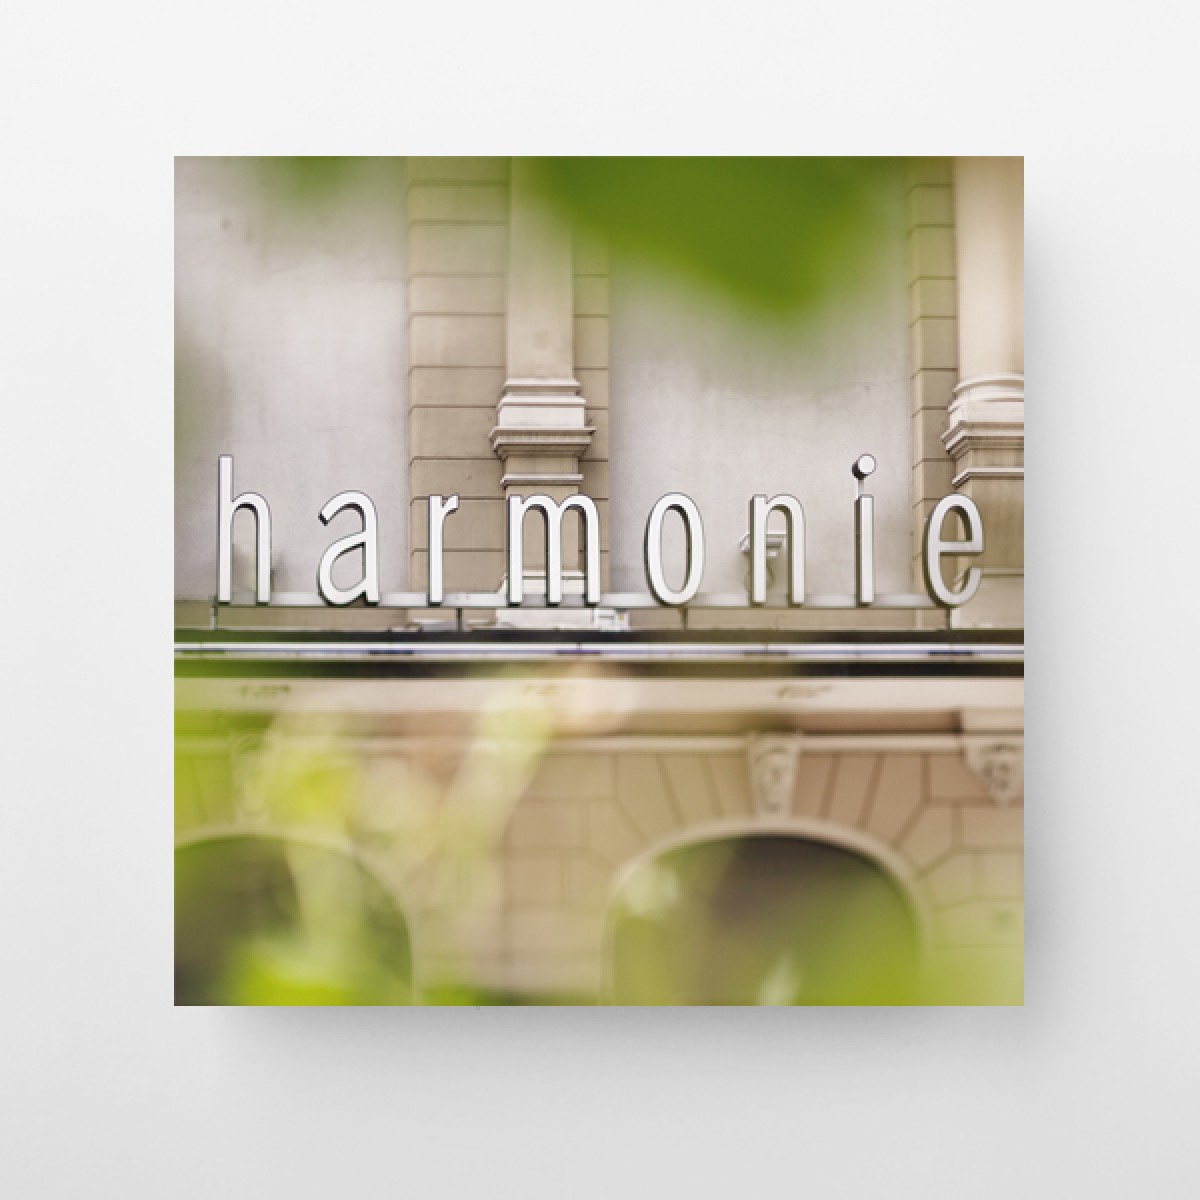 FrankfurterBubb Harmonie
Foto-Kachel